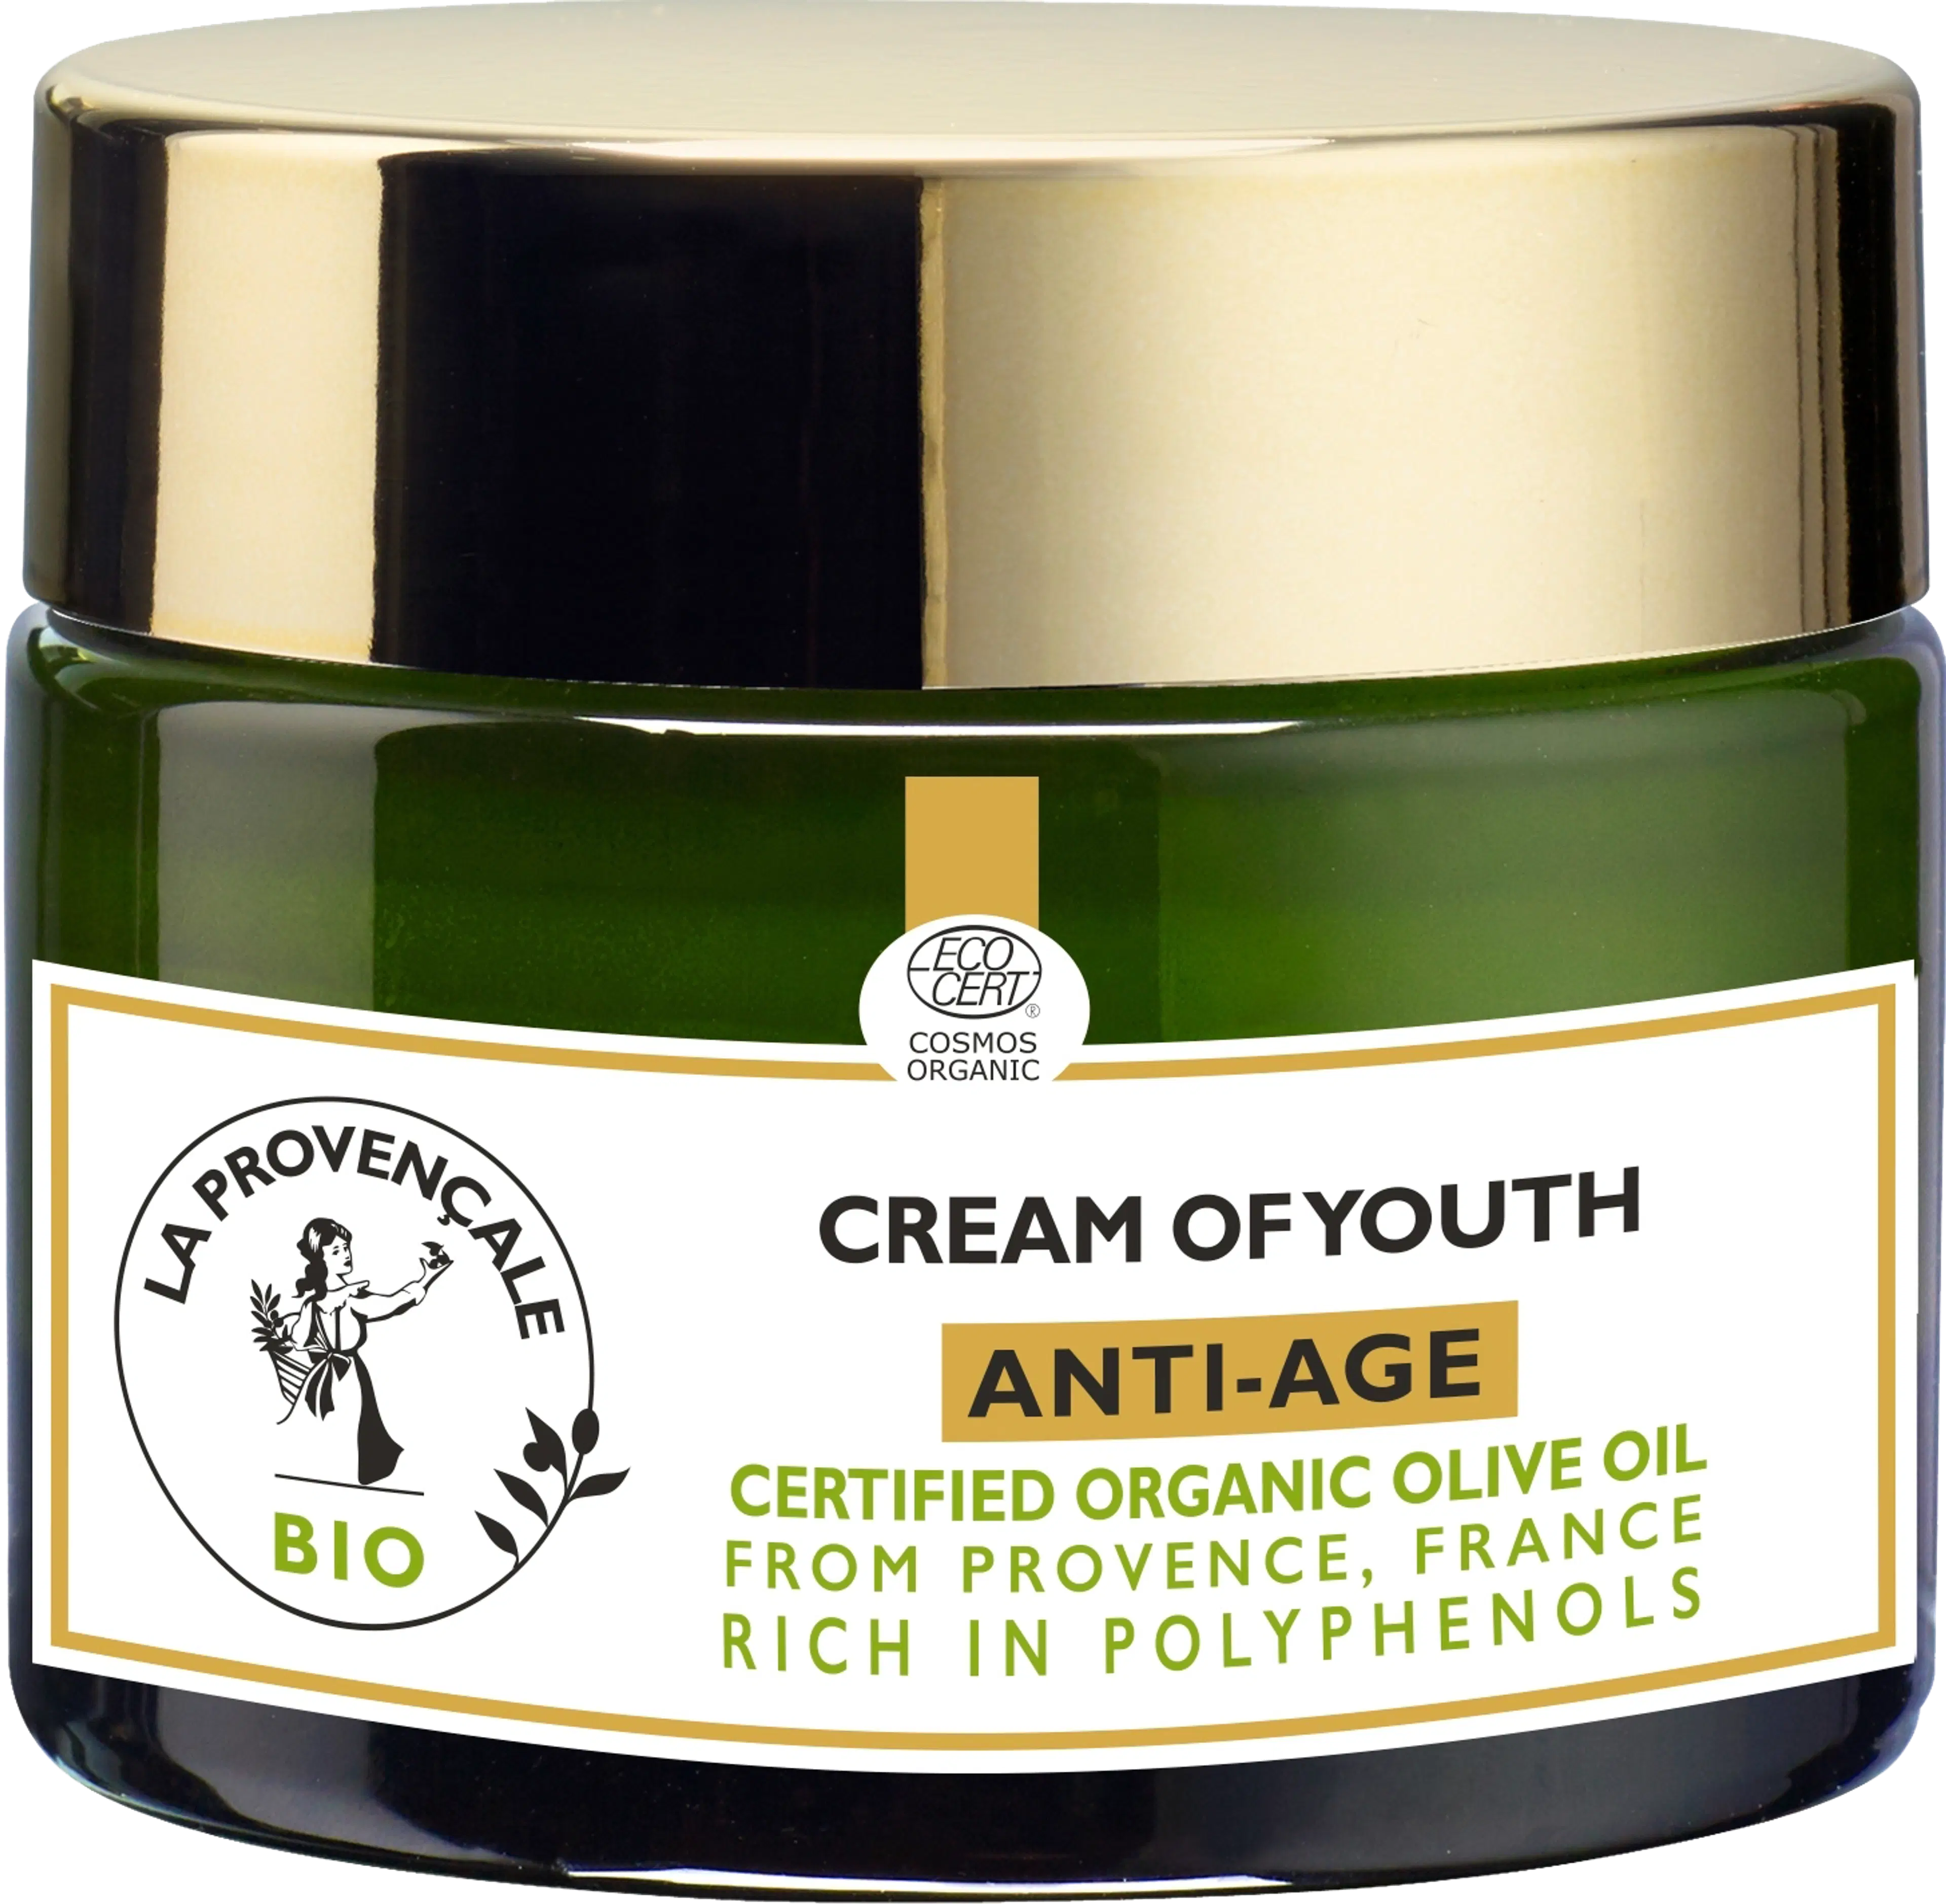 La Provençale Bio Cream of Youth Anti-Age päivävoide 50 ml